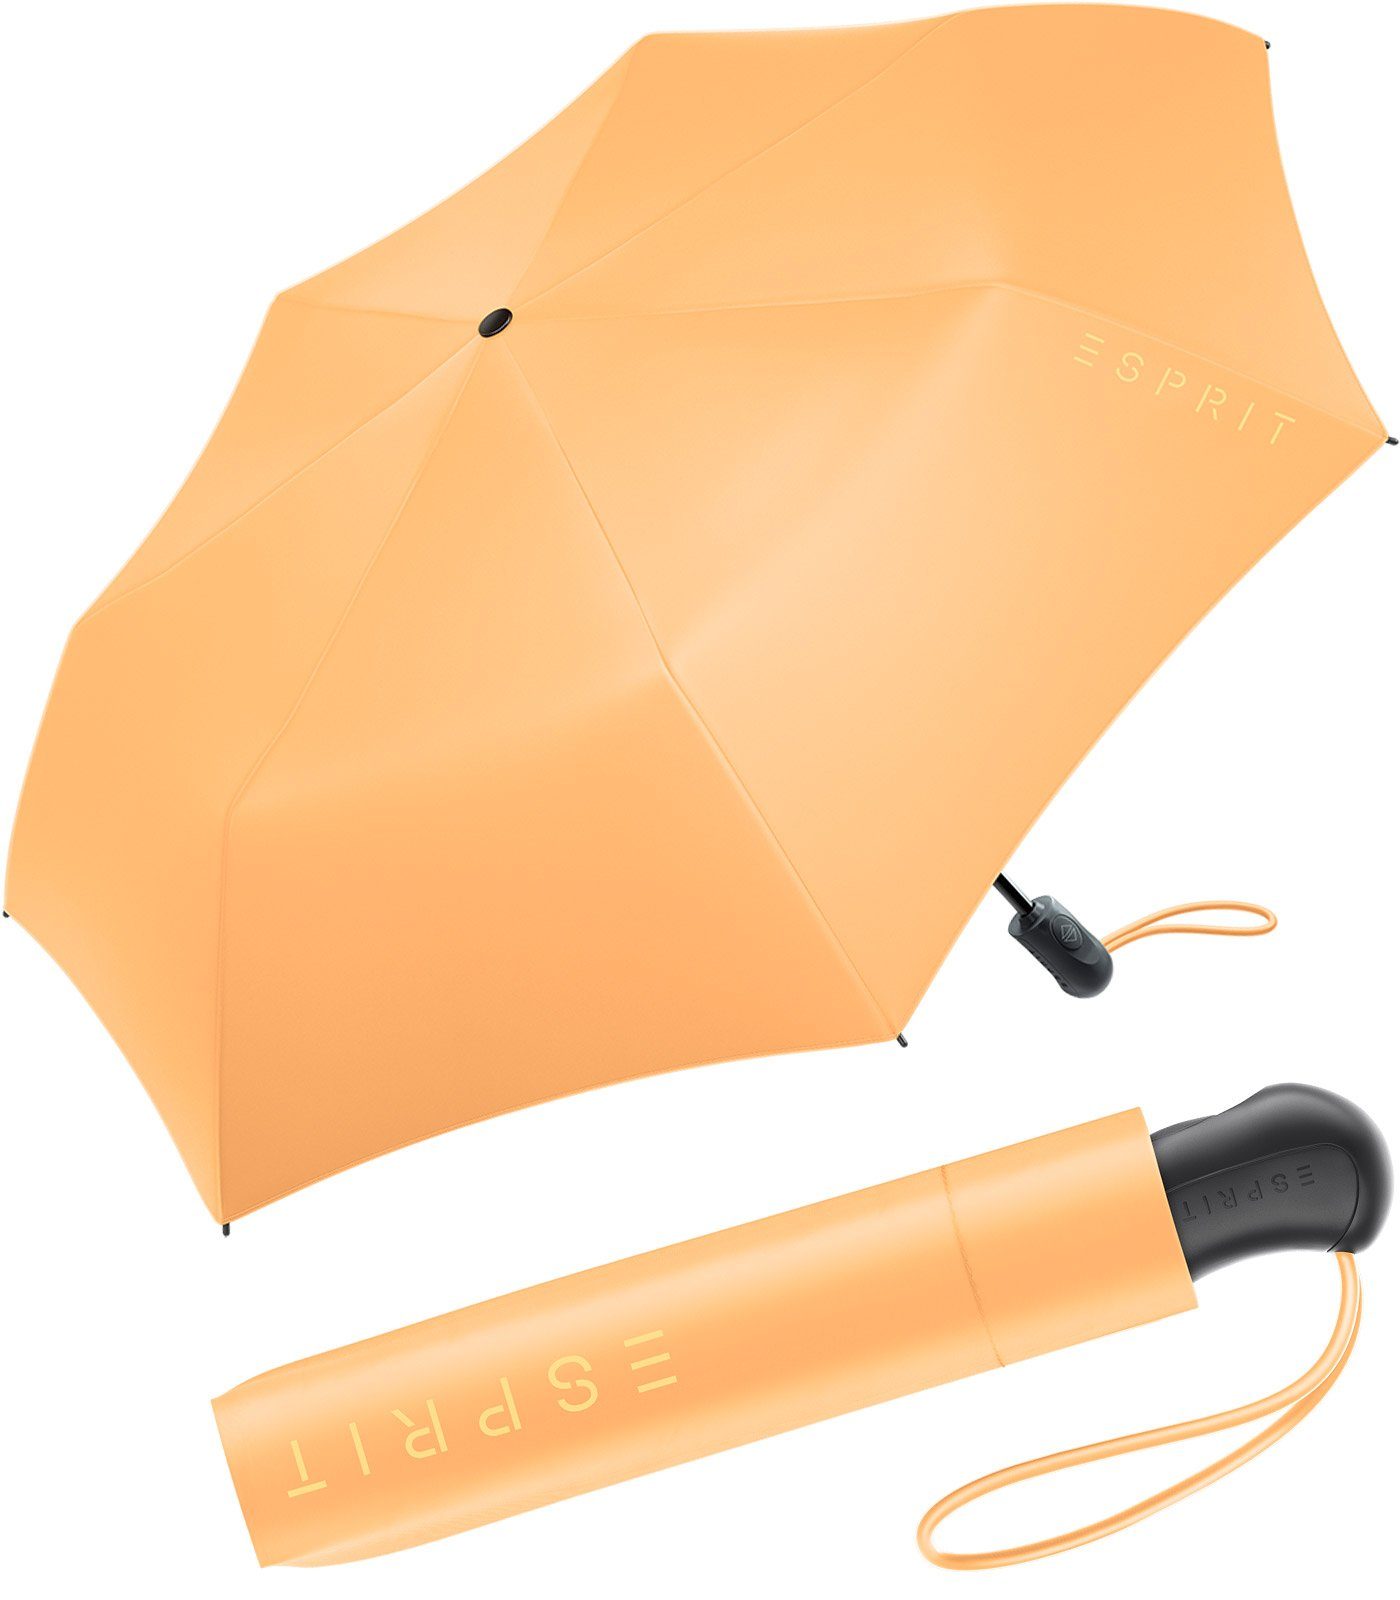 Esprit Langregenschirm Damen Easymatic Light Auf-Zu Automatik HW 2023, in den neuen Trendfarben - flax gelb